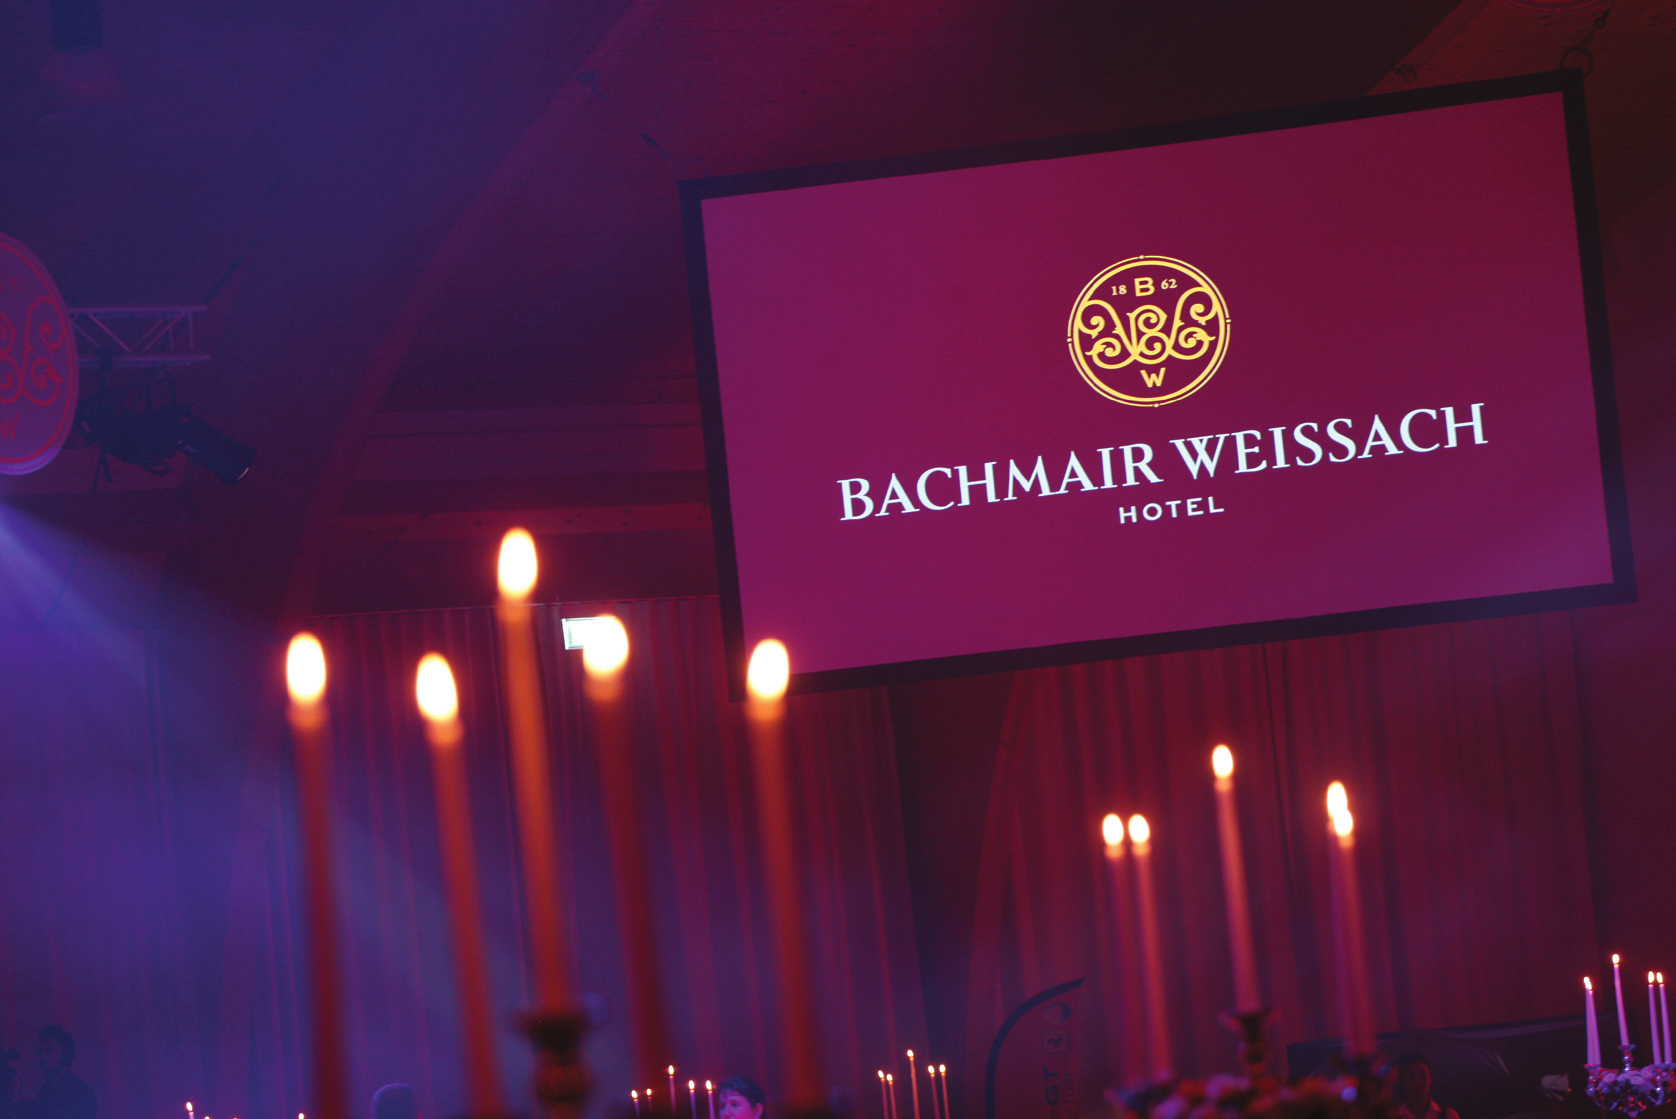 Ihre Gala in der Bachm air Weissach Arena Hotel Bachmair Weissach am Tegernsee, eine magische Liaison. Schaffen Sie sich traumhafte Hotel-Erlebnisse in der schönsten Urlaubsregion Deutschlands.